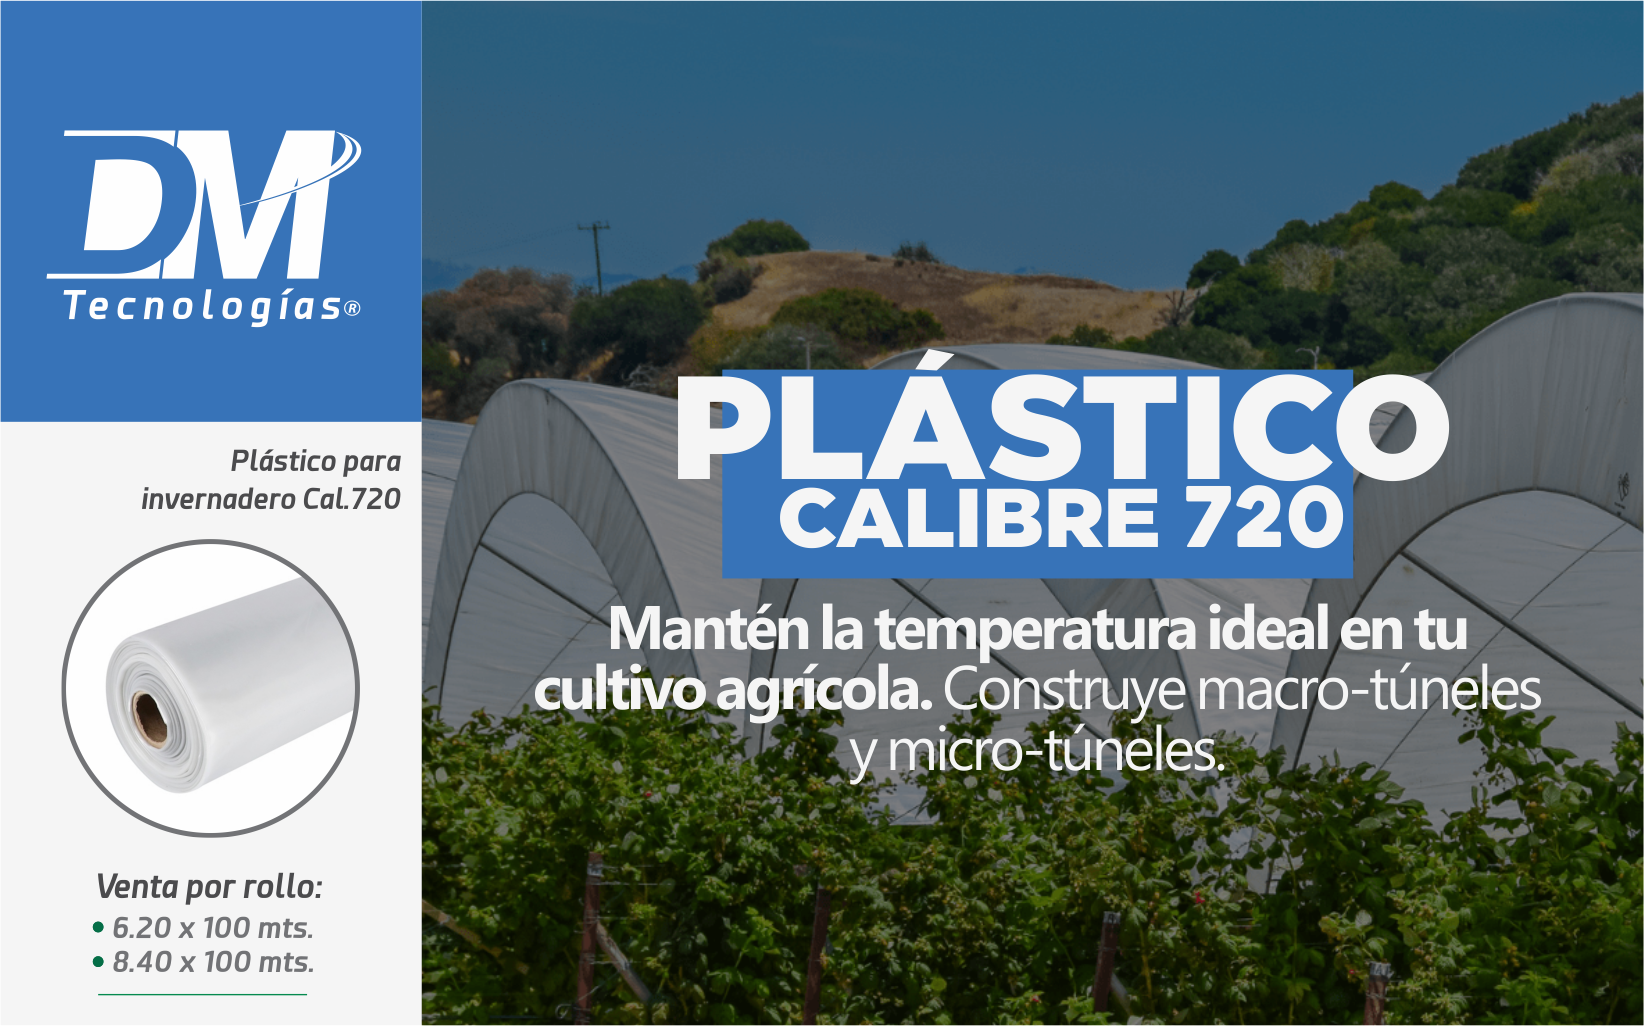 Ventajas de utilizar plástico para invernadero Cal. 720 - DM Tecnologías